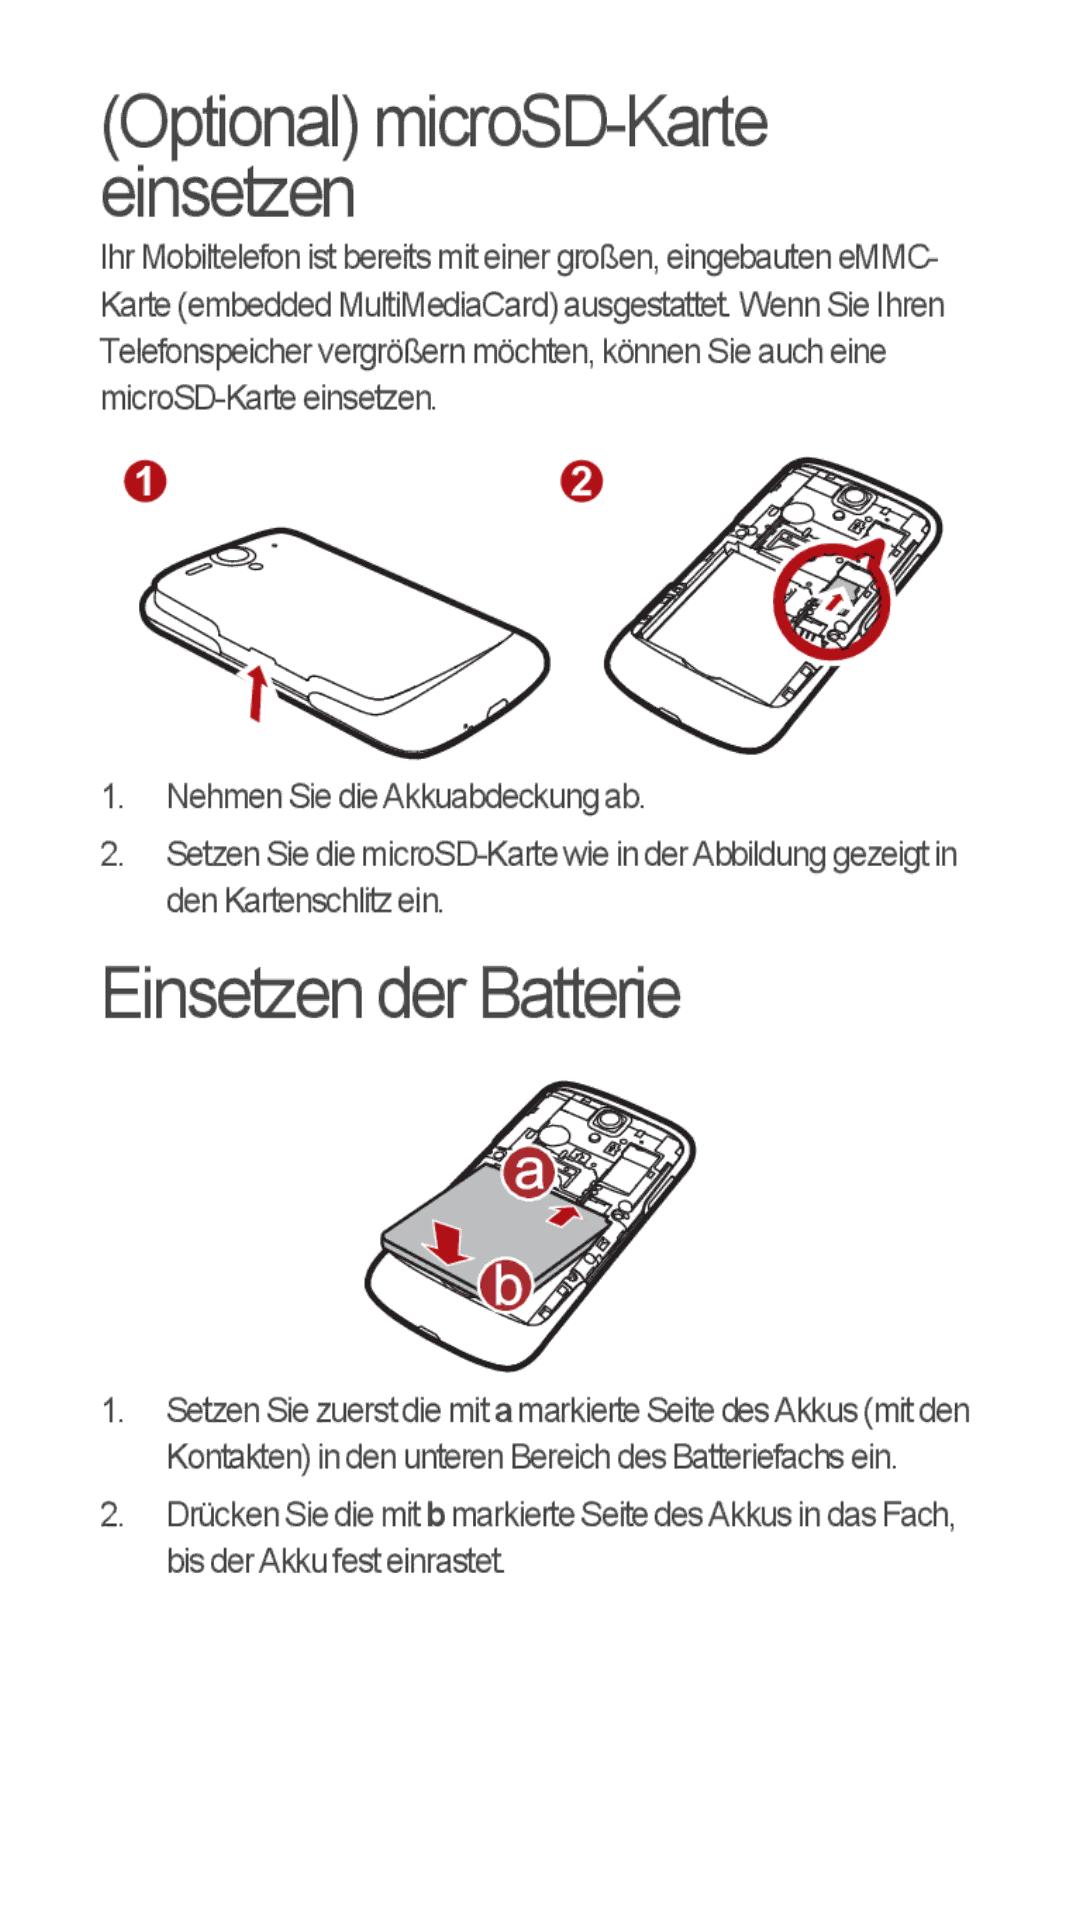 Huawei u8815 quick start Einsetzen der Batterie, Optional microSD-Karte einsetzen 